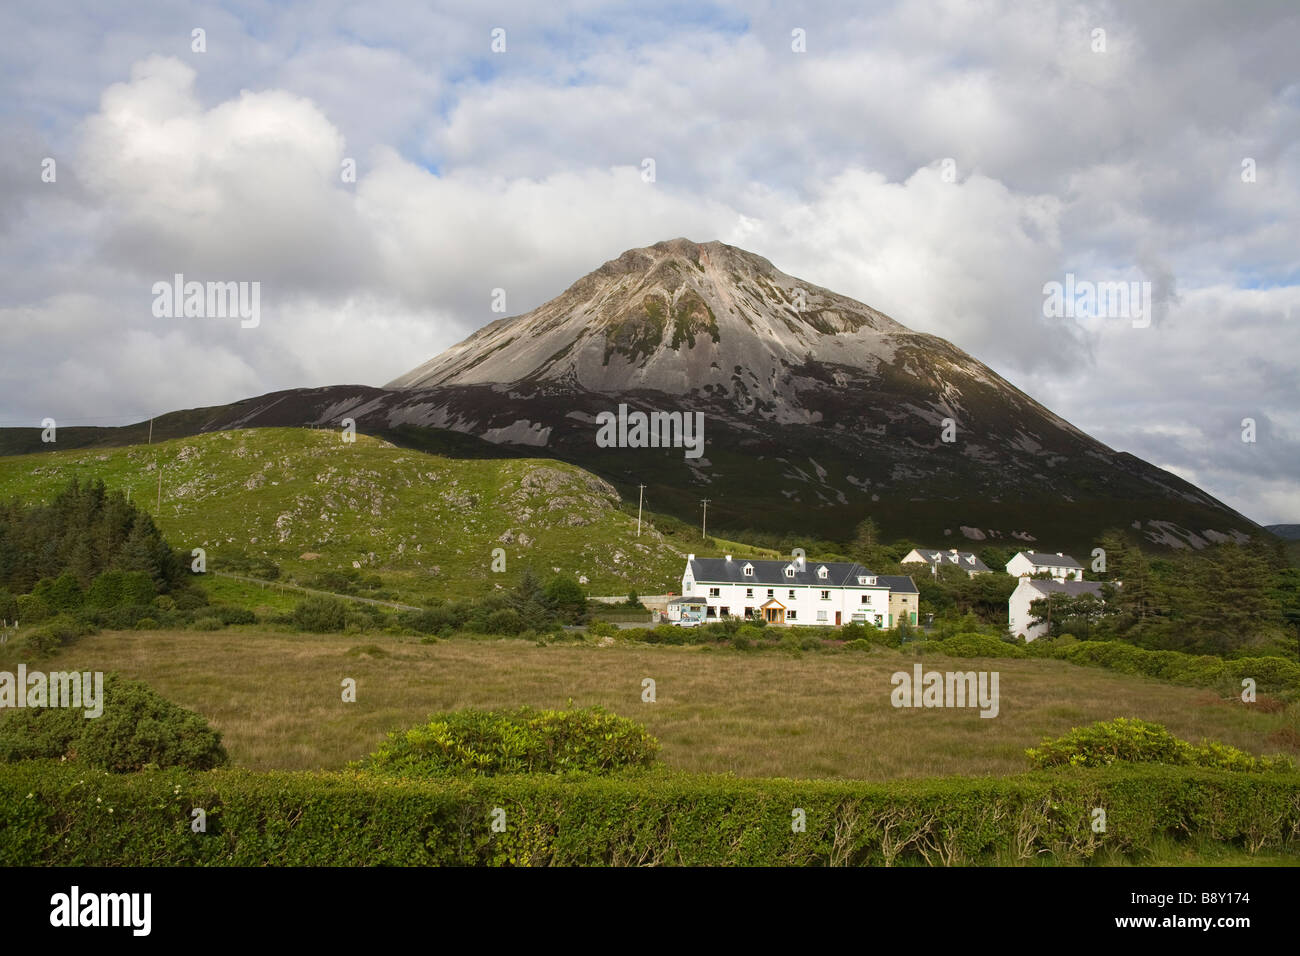 Maisons sous une montagne, le Mont Errigal, Dunlewy, comté de Donegal, Irlande, Province de l'Ulster Banque D'Images